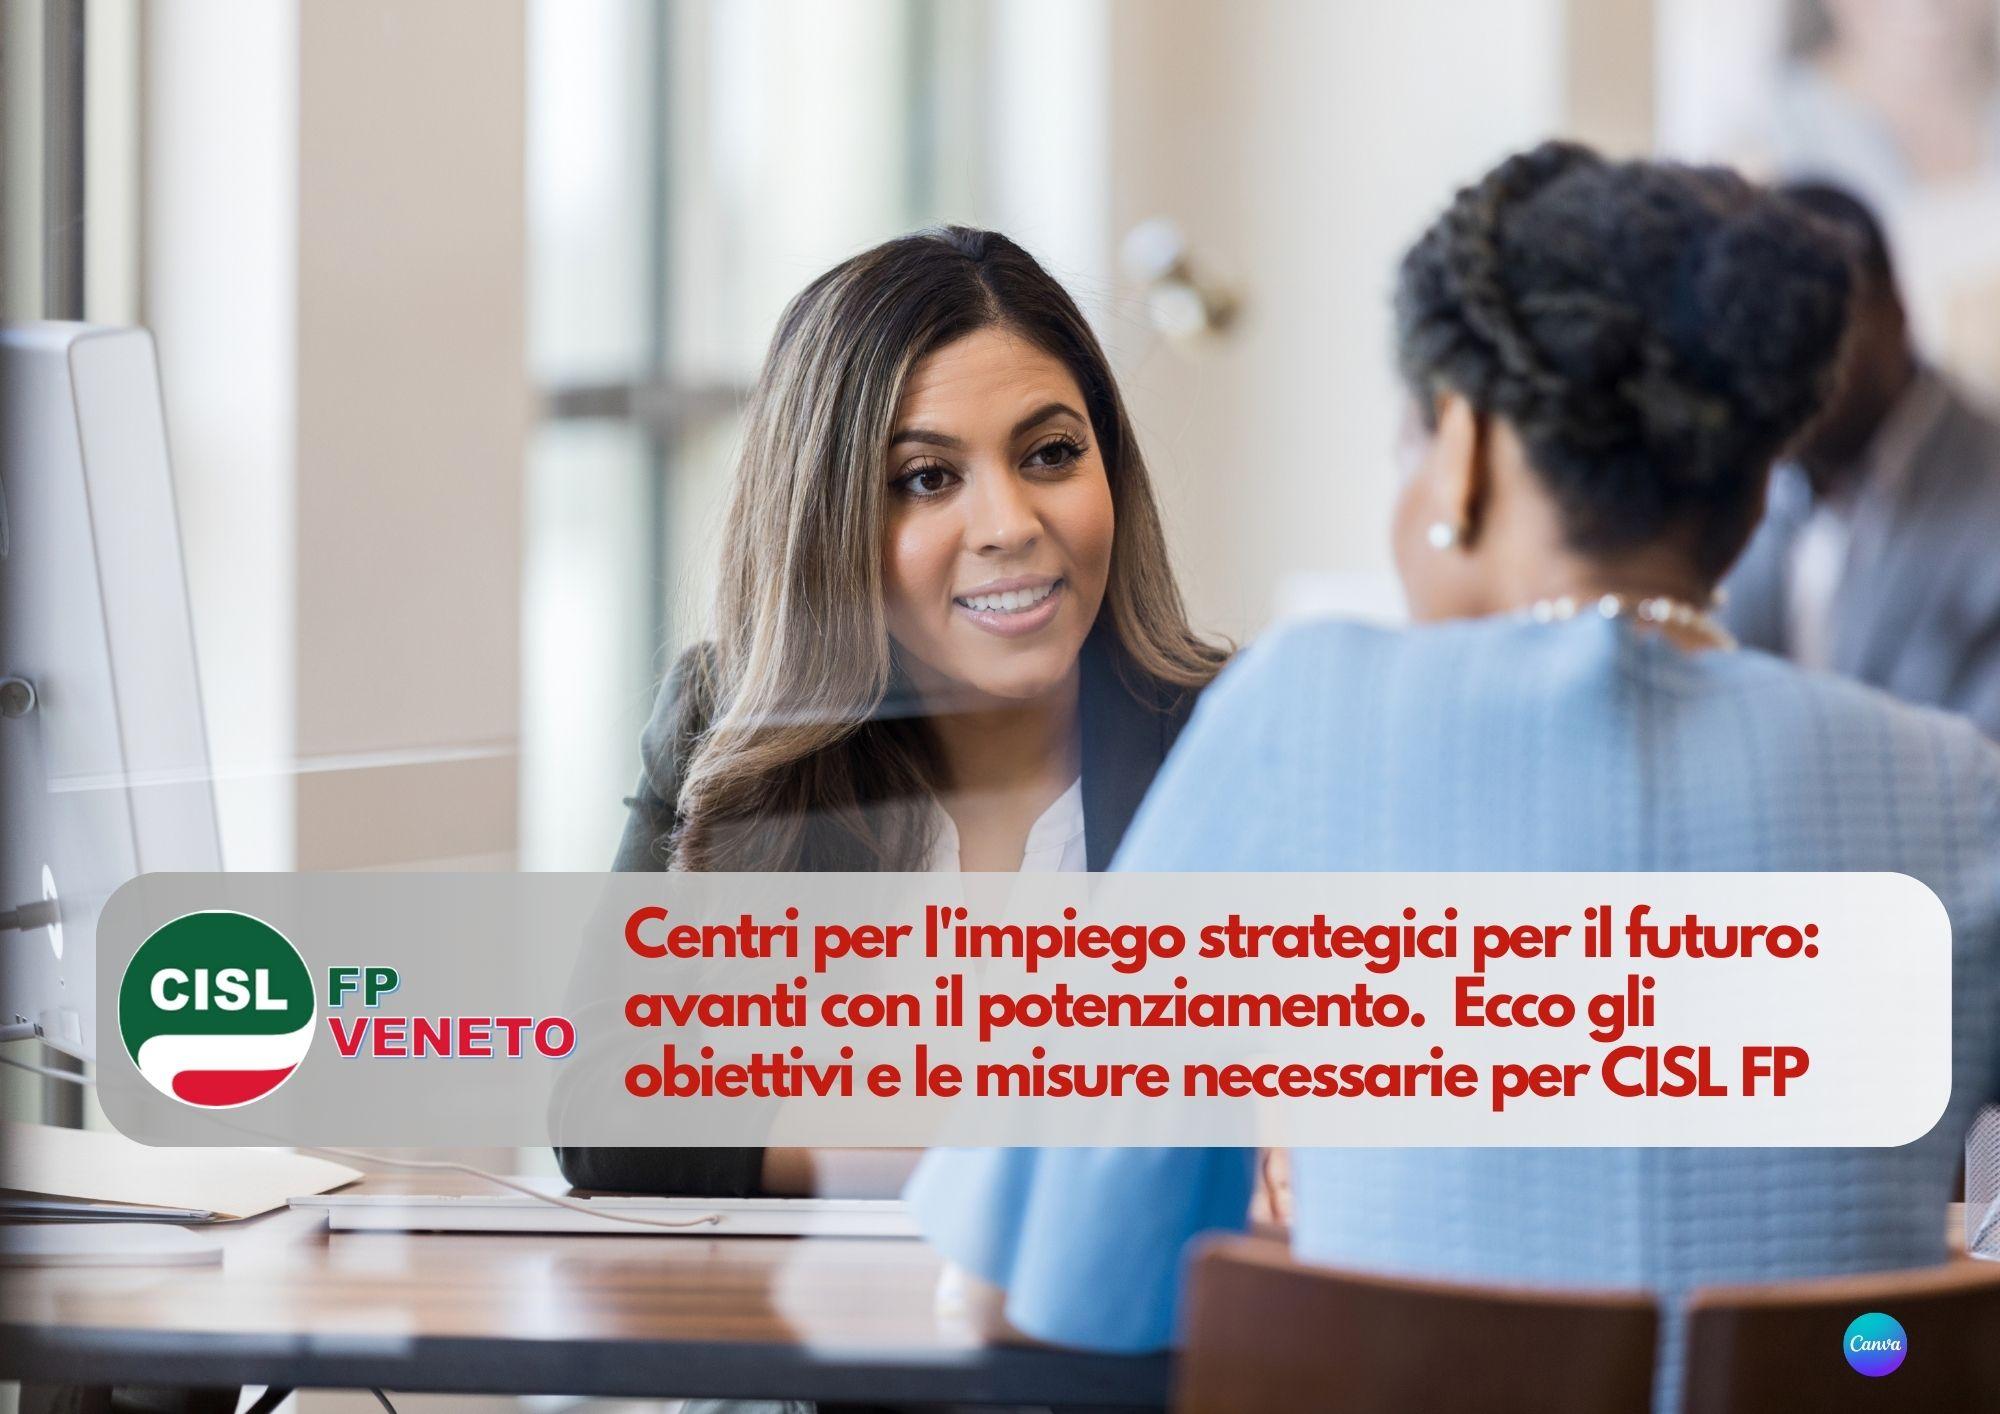 CISL FP Veneto. Centri per l'impiego strategici per il futuro: avanti con il potenziamento